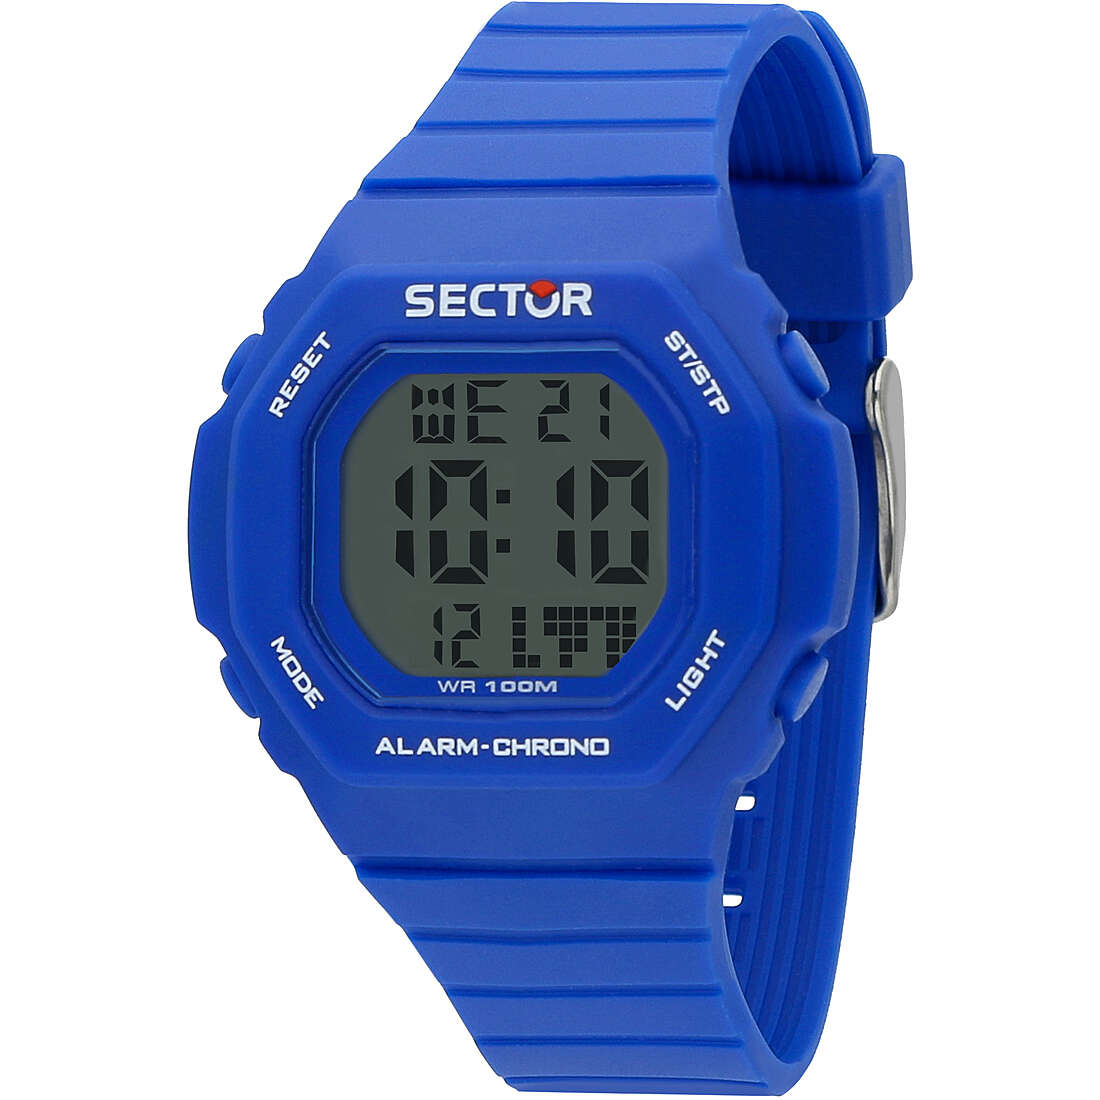 Uhr digital mann Sector R3251599002